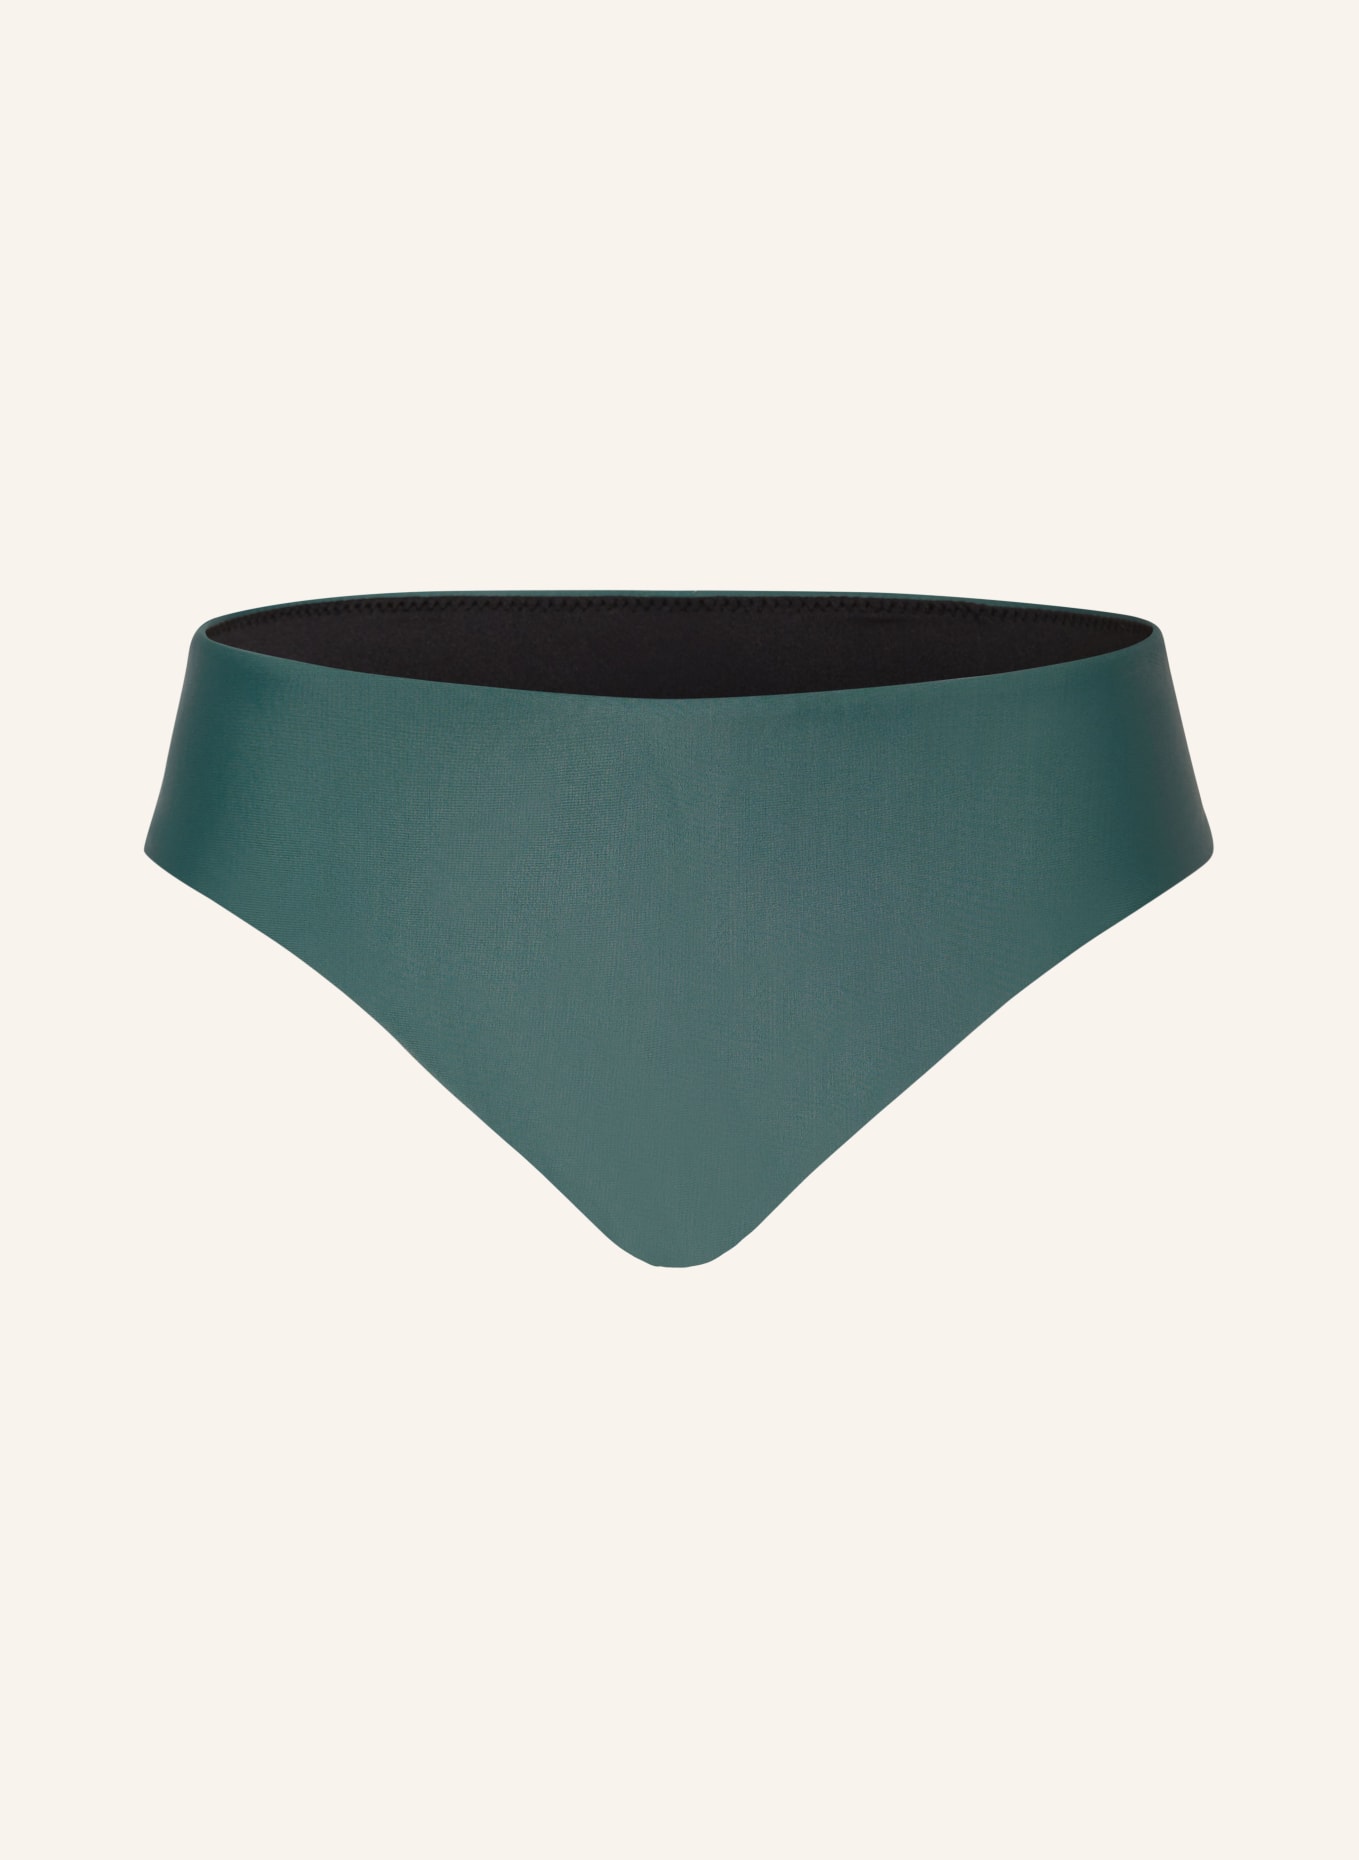 PICTURE Basic bikini bottoms SOROYA with UV protection 50+, Color: TEAL (Image 1)